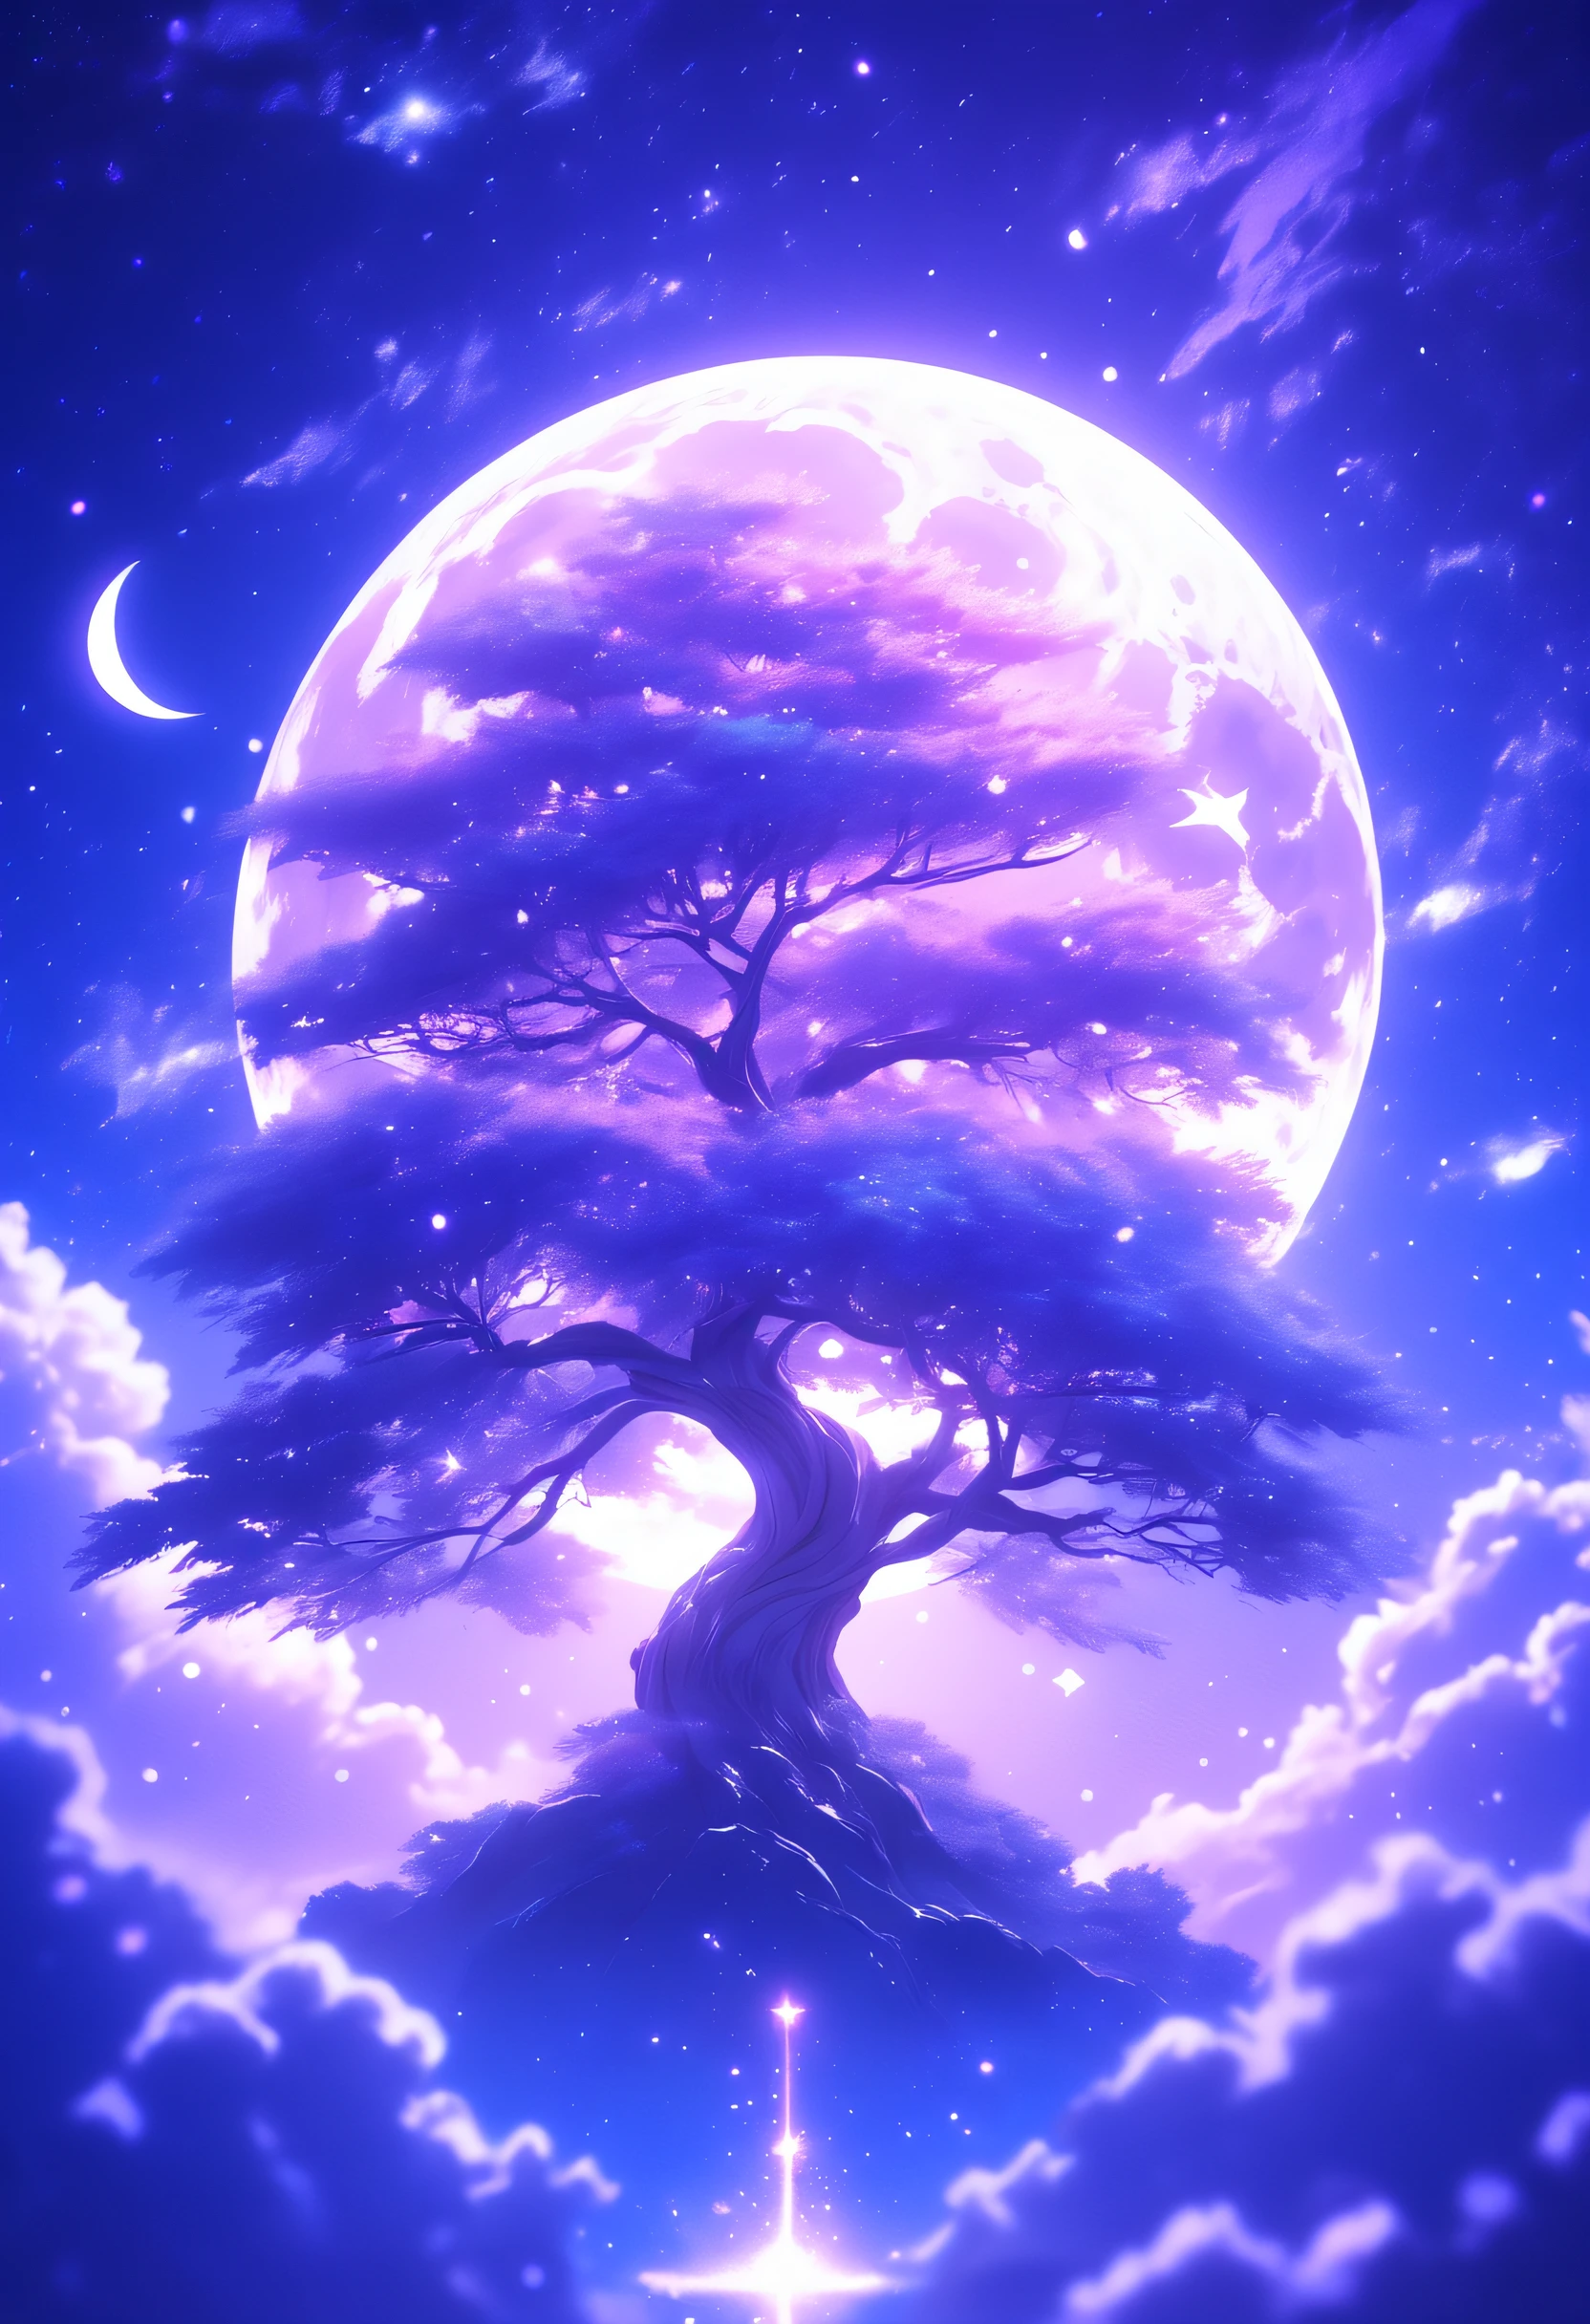 太空中的一棵树，天空中的月亮, 浅紫色和浅靛蓝色风格, 动漫艺术, 夜核, 精美拼贴画, 微光, 超高清图像, 禅宗佛教影响,梦幻般的,16千